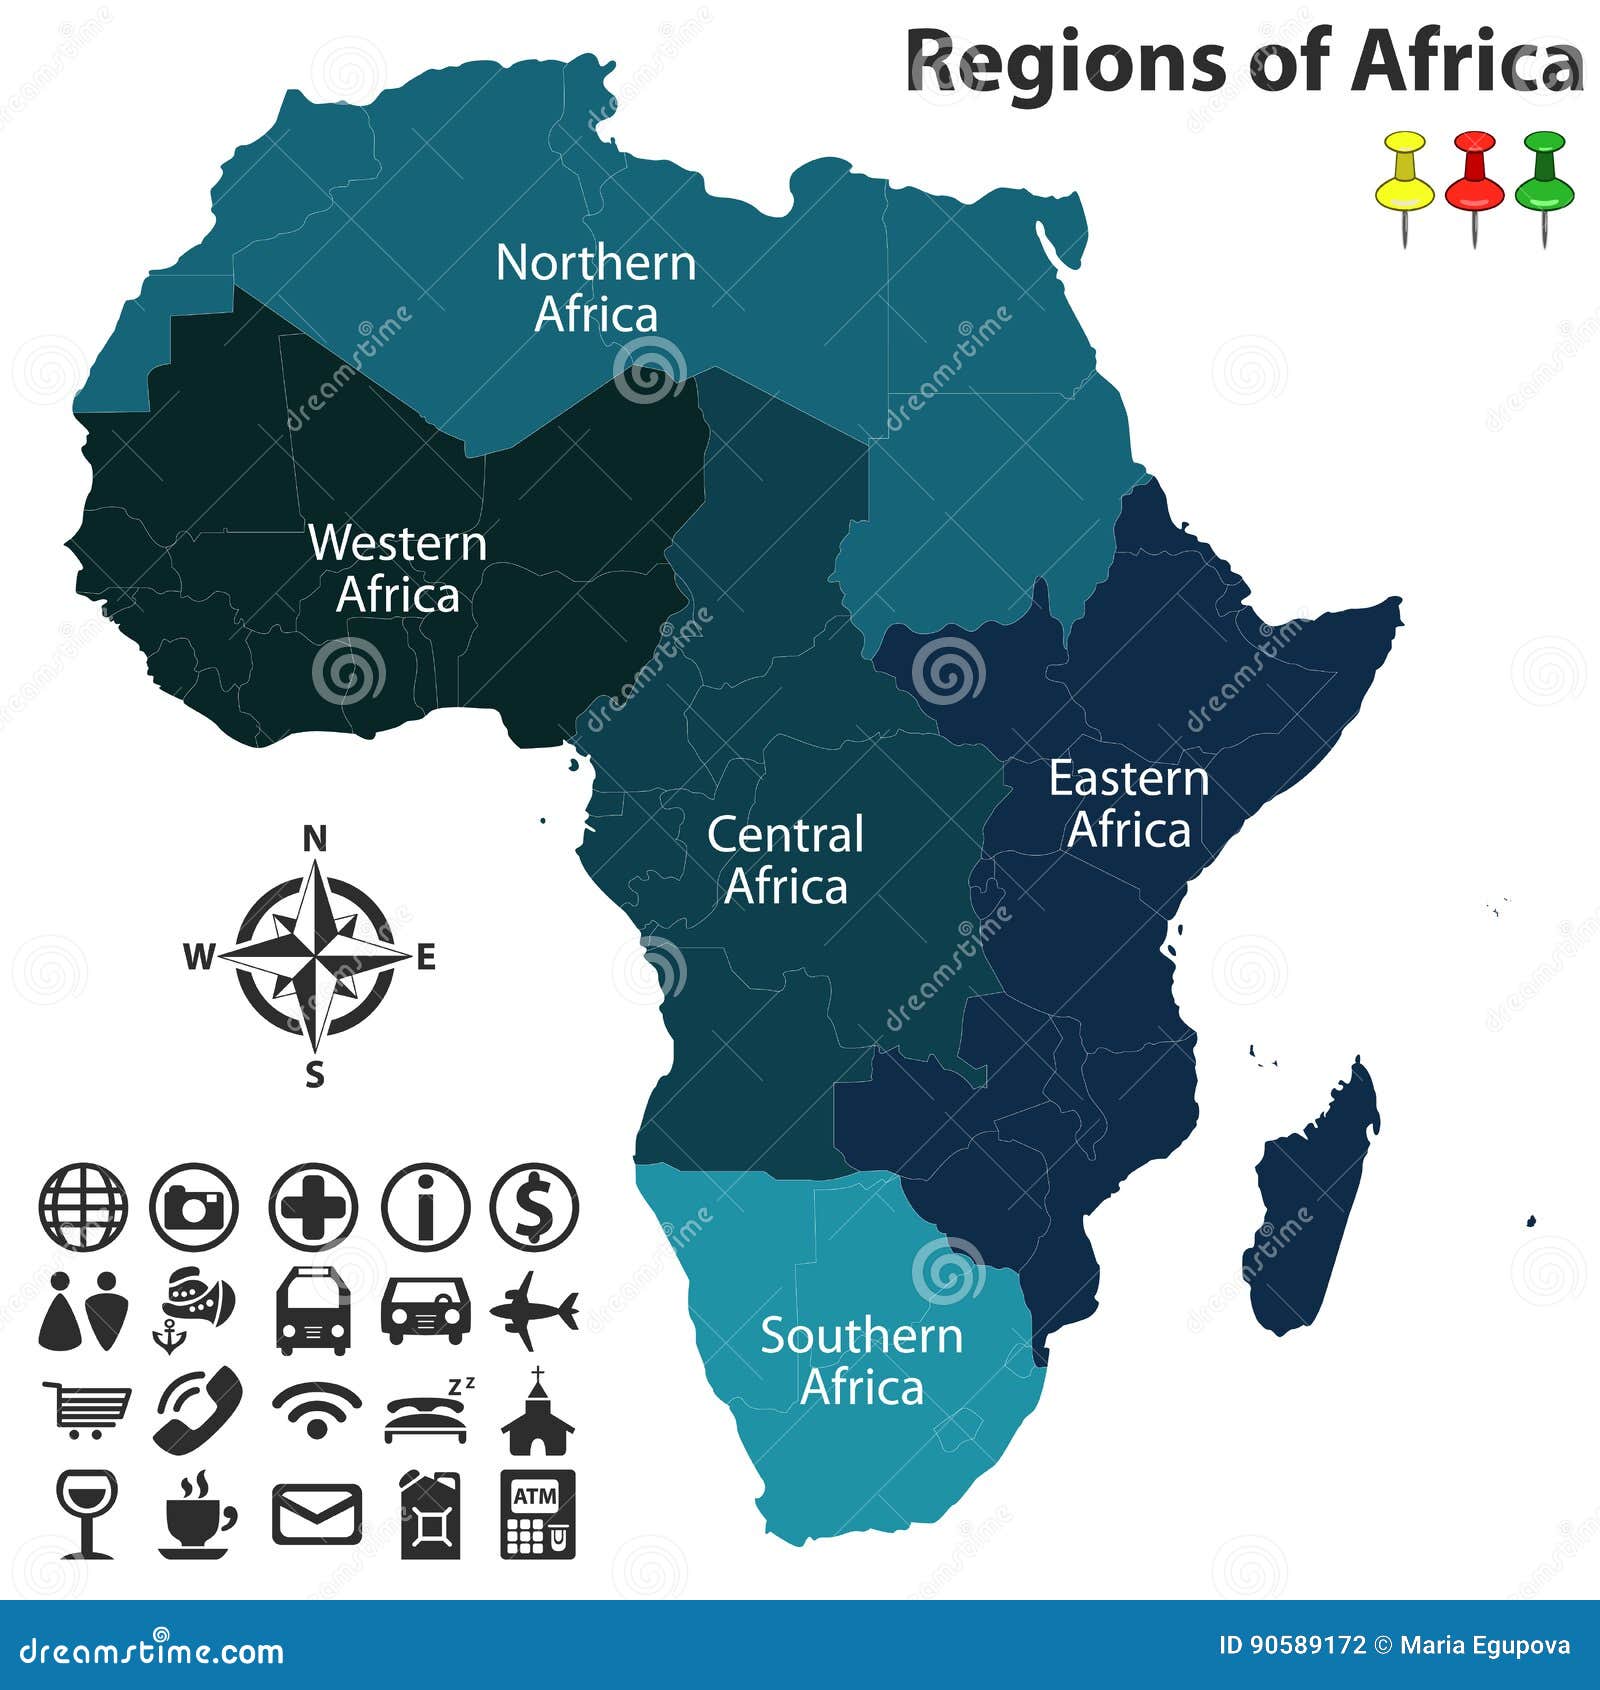 regions of africa